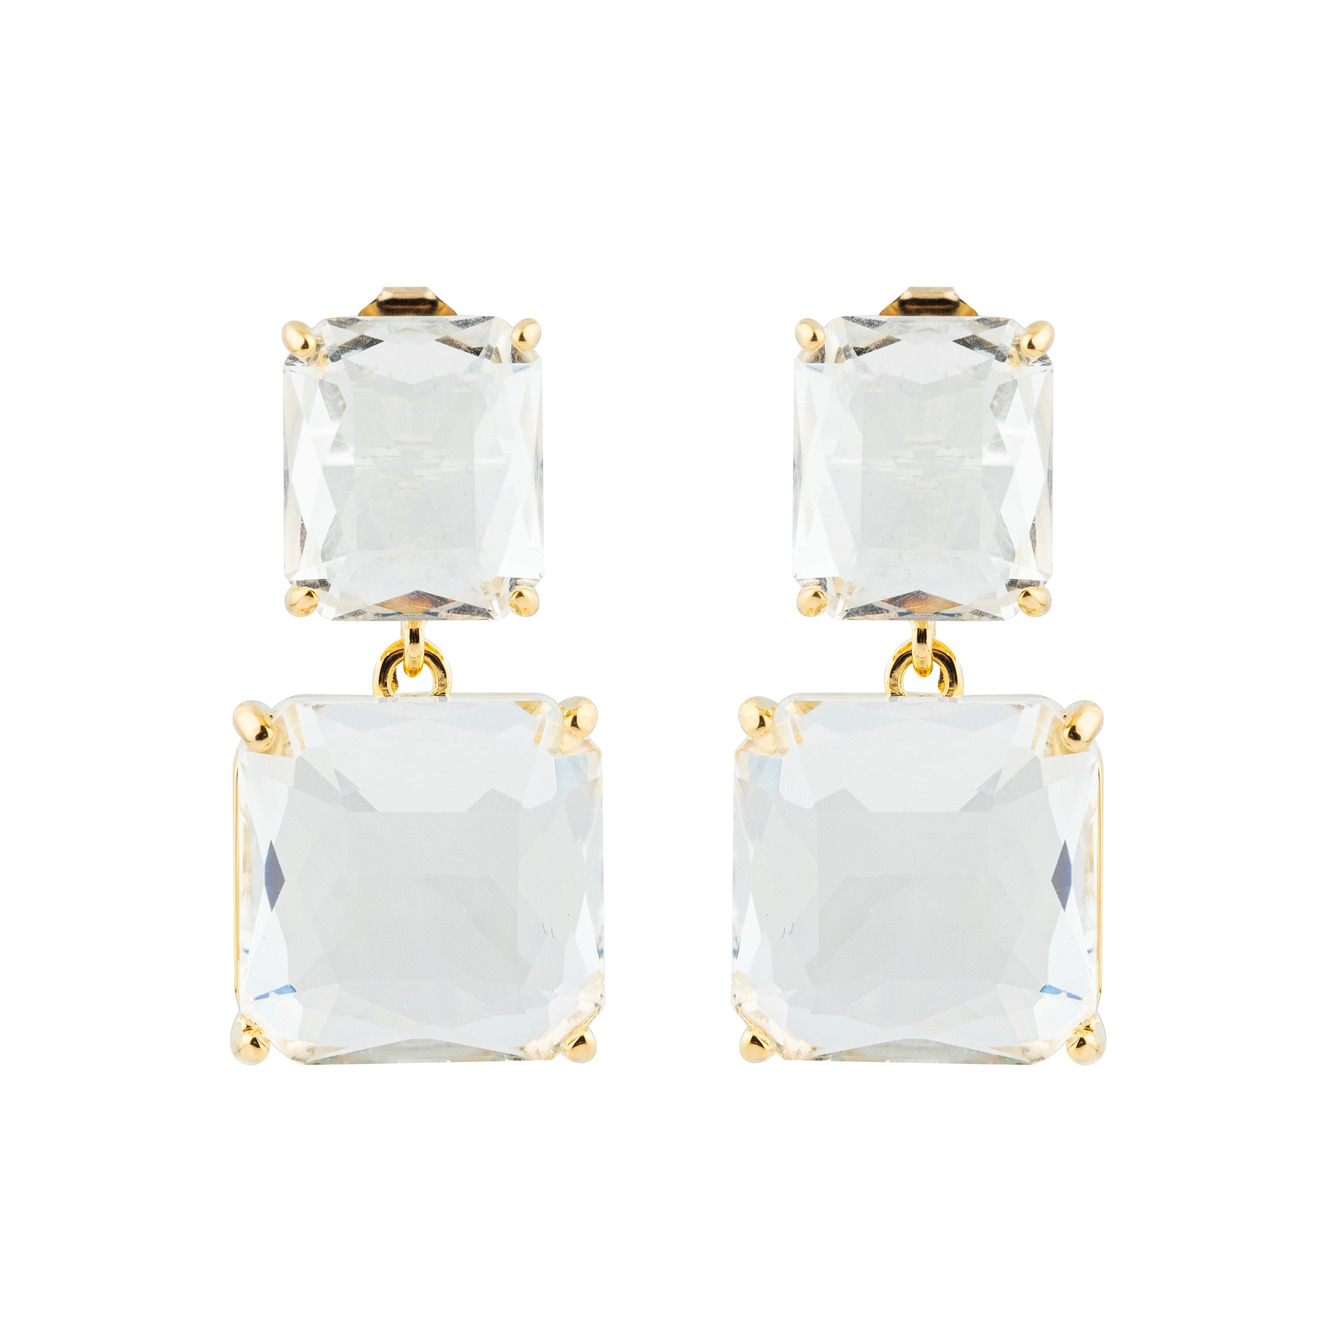 Herald Percy Двойные золотистые серьги с белыми кристаллами herald percy золотистые длинные серьги бантики с кристаллами